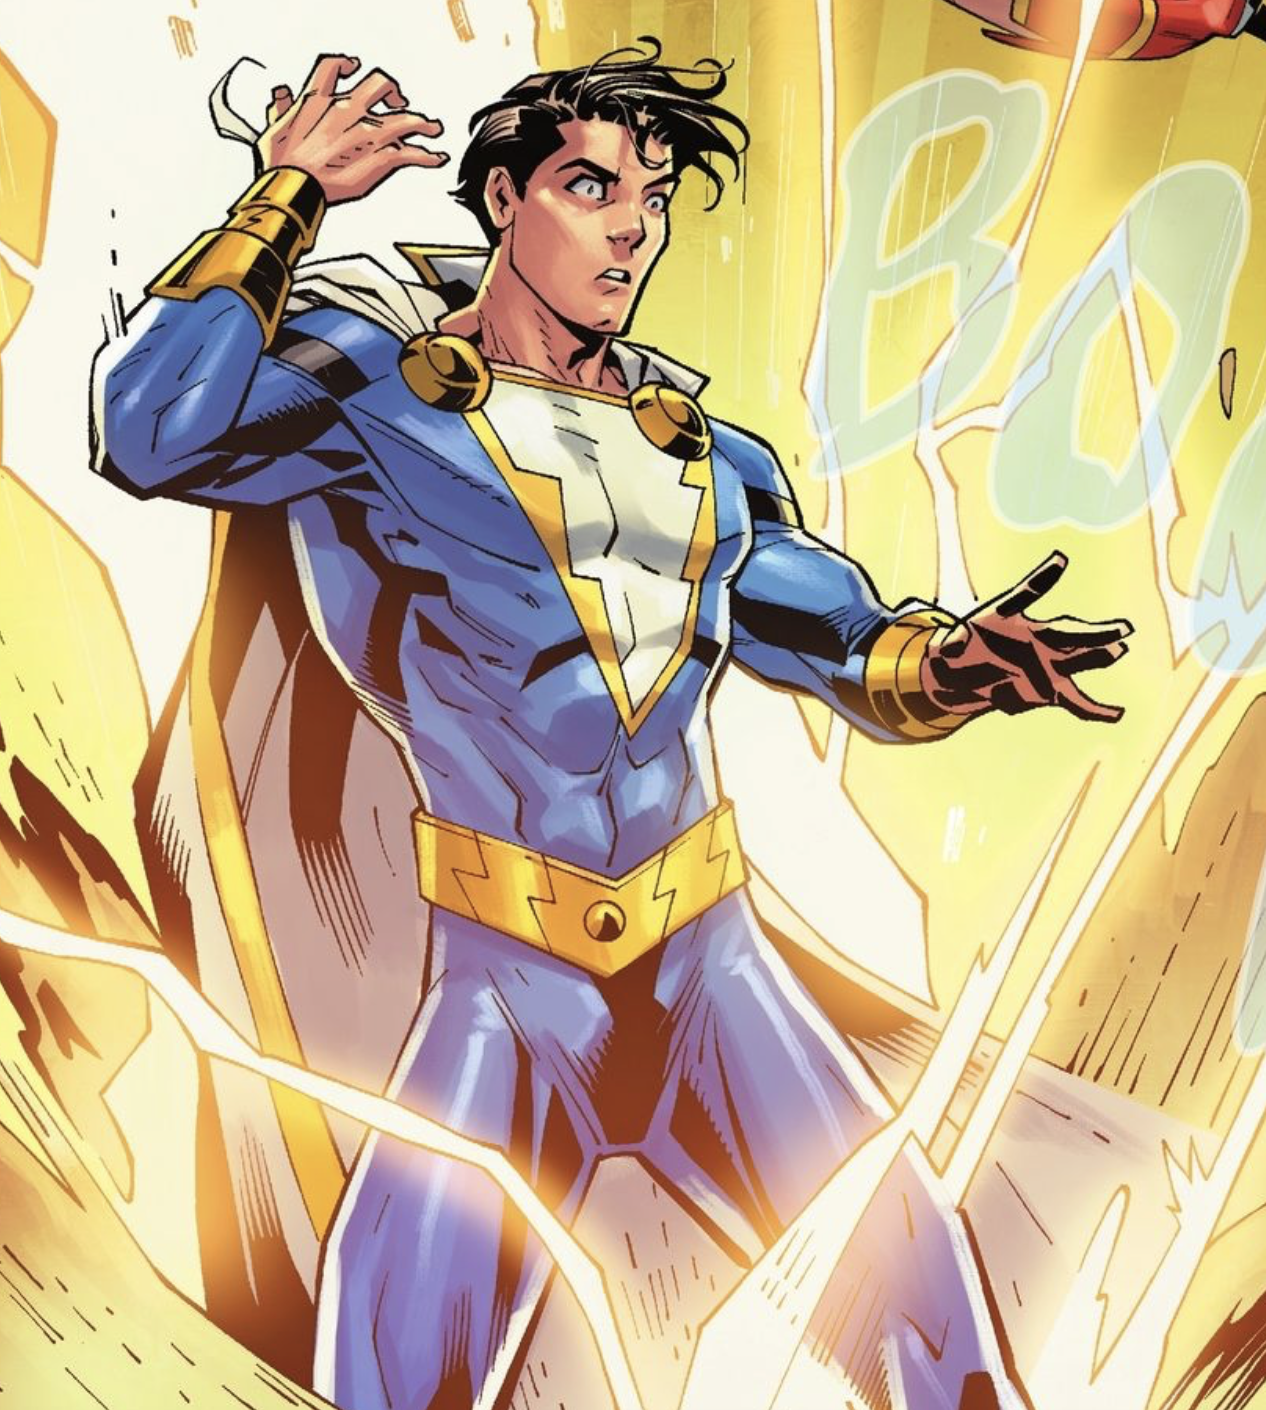 captain marvel jr vs superboy